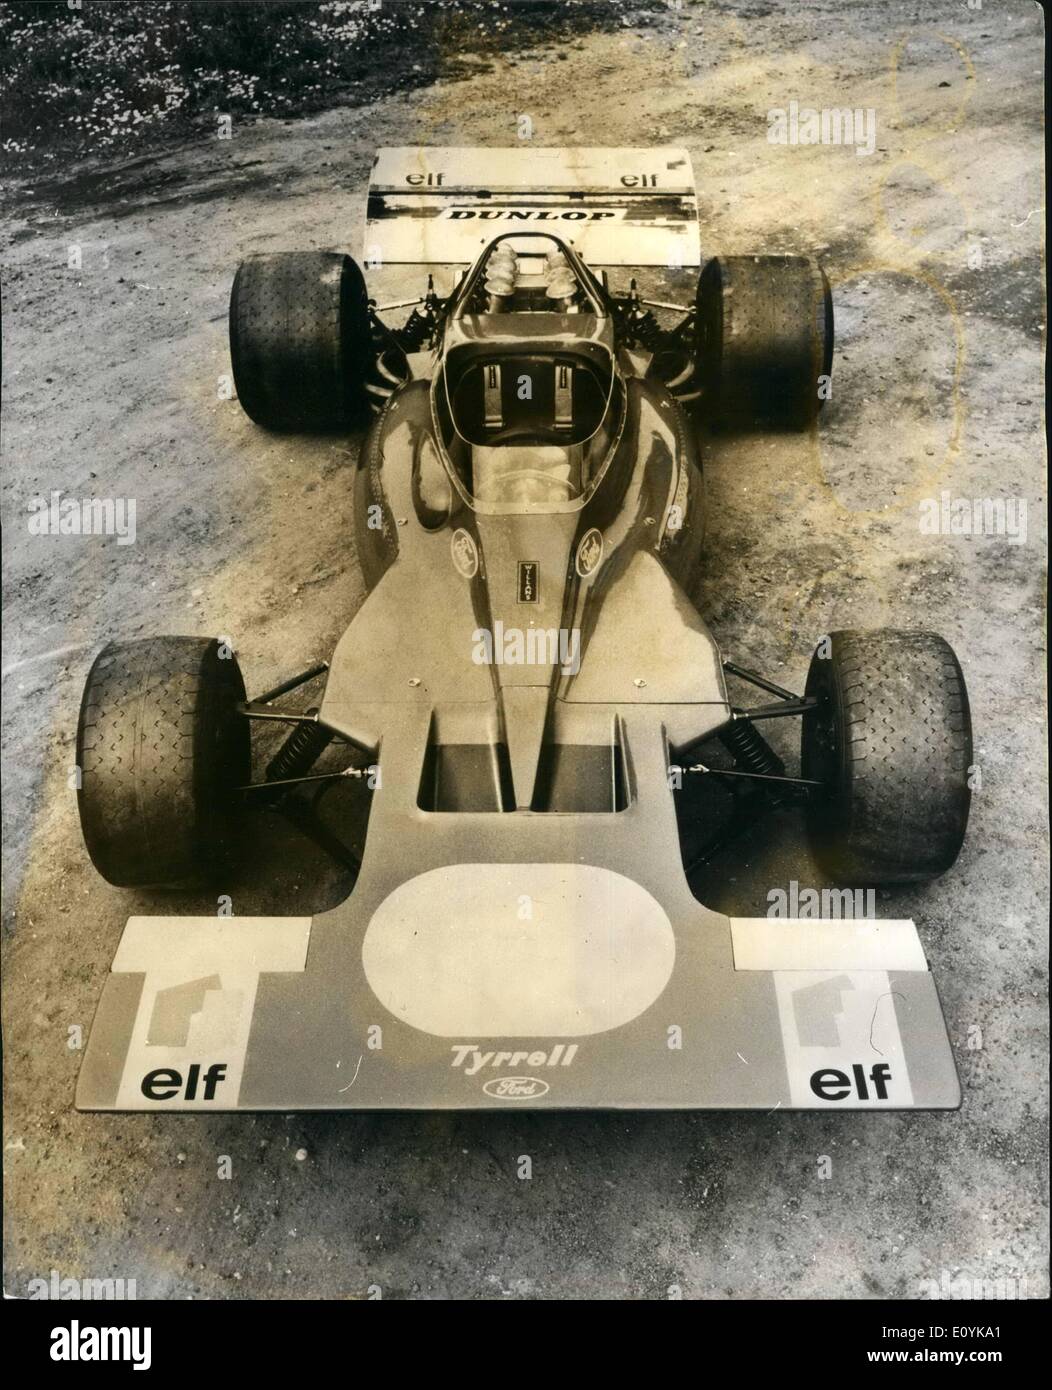 Agosto 08, 1970 - nuova vettura per Jackie Stewart alla Quiton.: campione del mondo conducente Jackie Stewart è di avere nuove auto di Formula Uno per questo anno le restanti quattro eventi di campionato. La vettura - chiamato Tyrrell-Ford-è alimentato da un motore Ford Cosworth V* motore, e farà il suo esordio in Formula ad Oulton Park in International Gold Cup di sabato. Esso darà Jackie Stewart il suo quarto Grand Prix in chassis da molti anni. La vettura è stata progettata da Derek Gardner, che si unì a Ken Tyrrell da Ferguson Ricerca Foto Stock